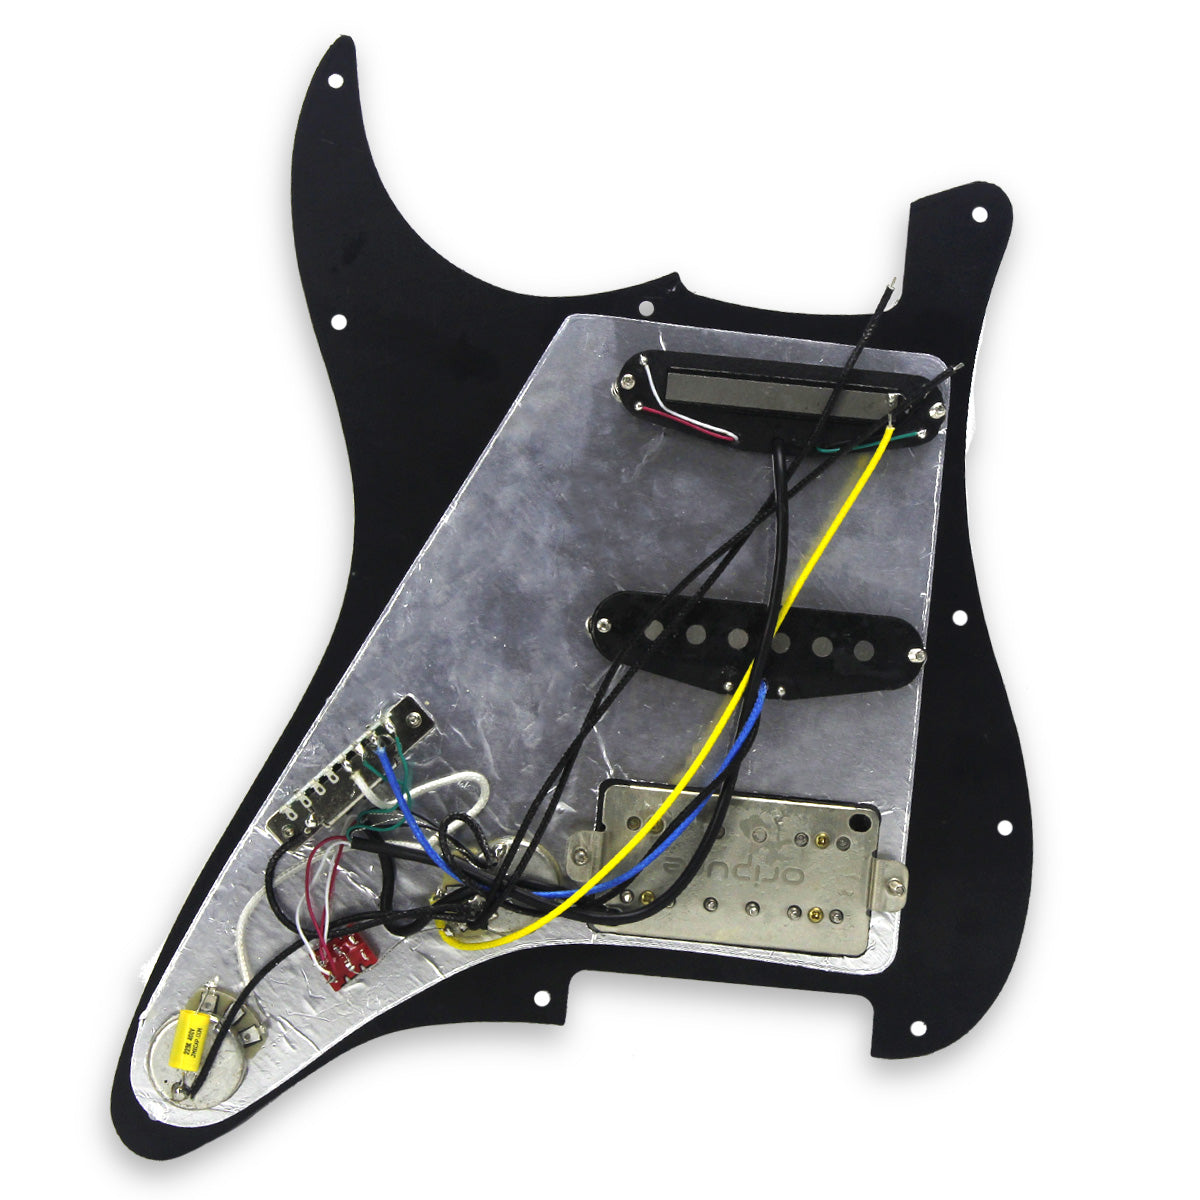 OriPure Prewired HSS Guitar Pickguard Alnico 5 Pickup Set fit FD Strat Guitar